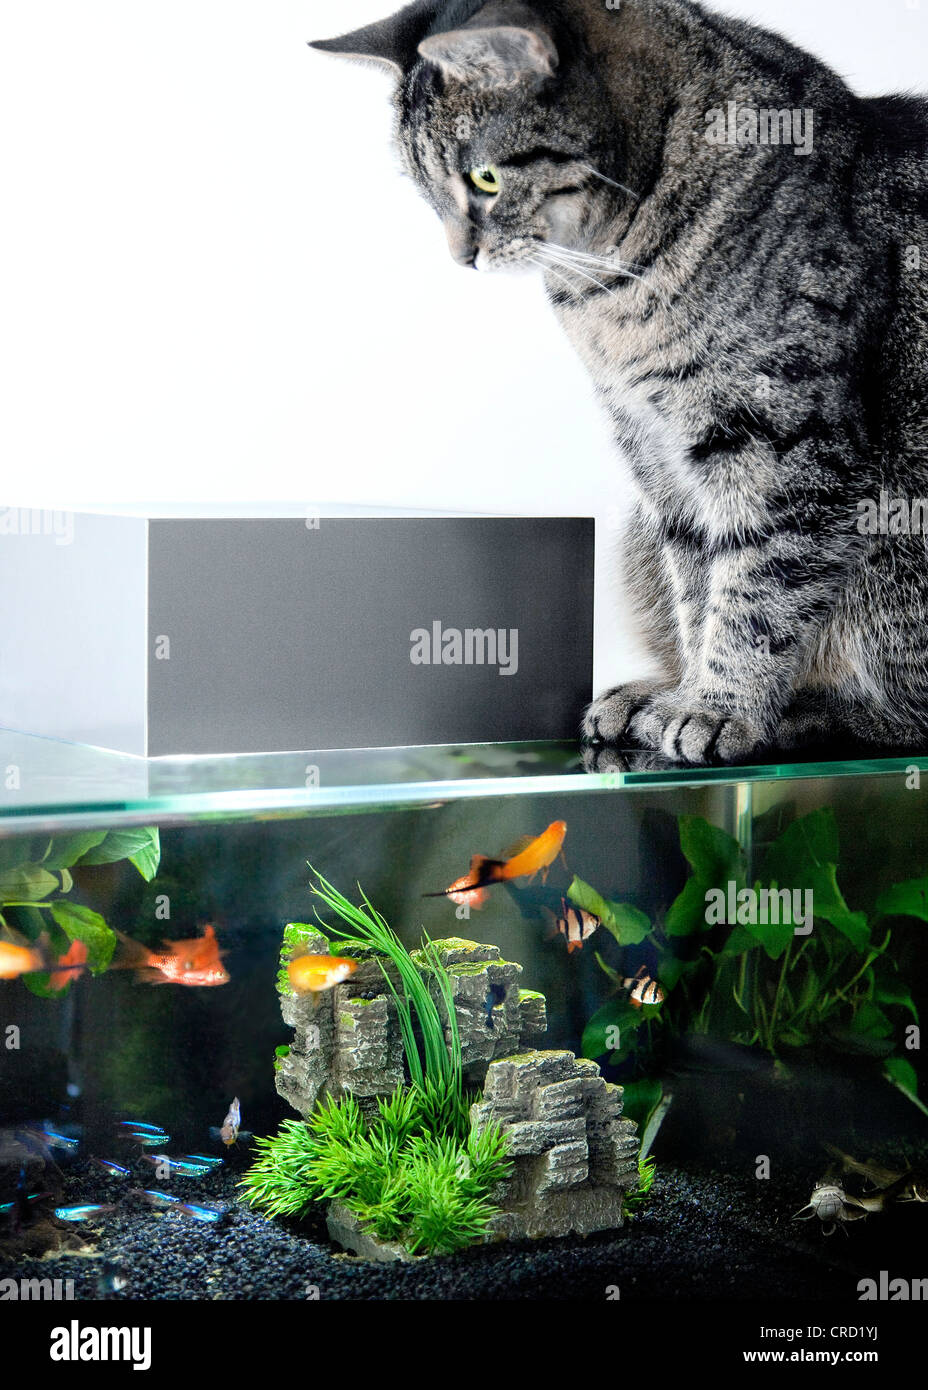 Cat sitting on aquarium Stock Photo